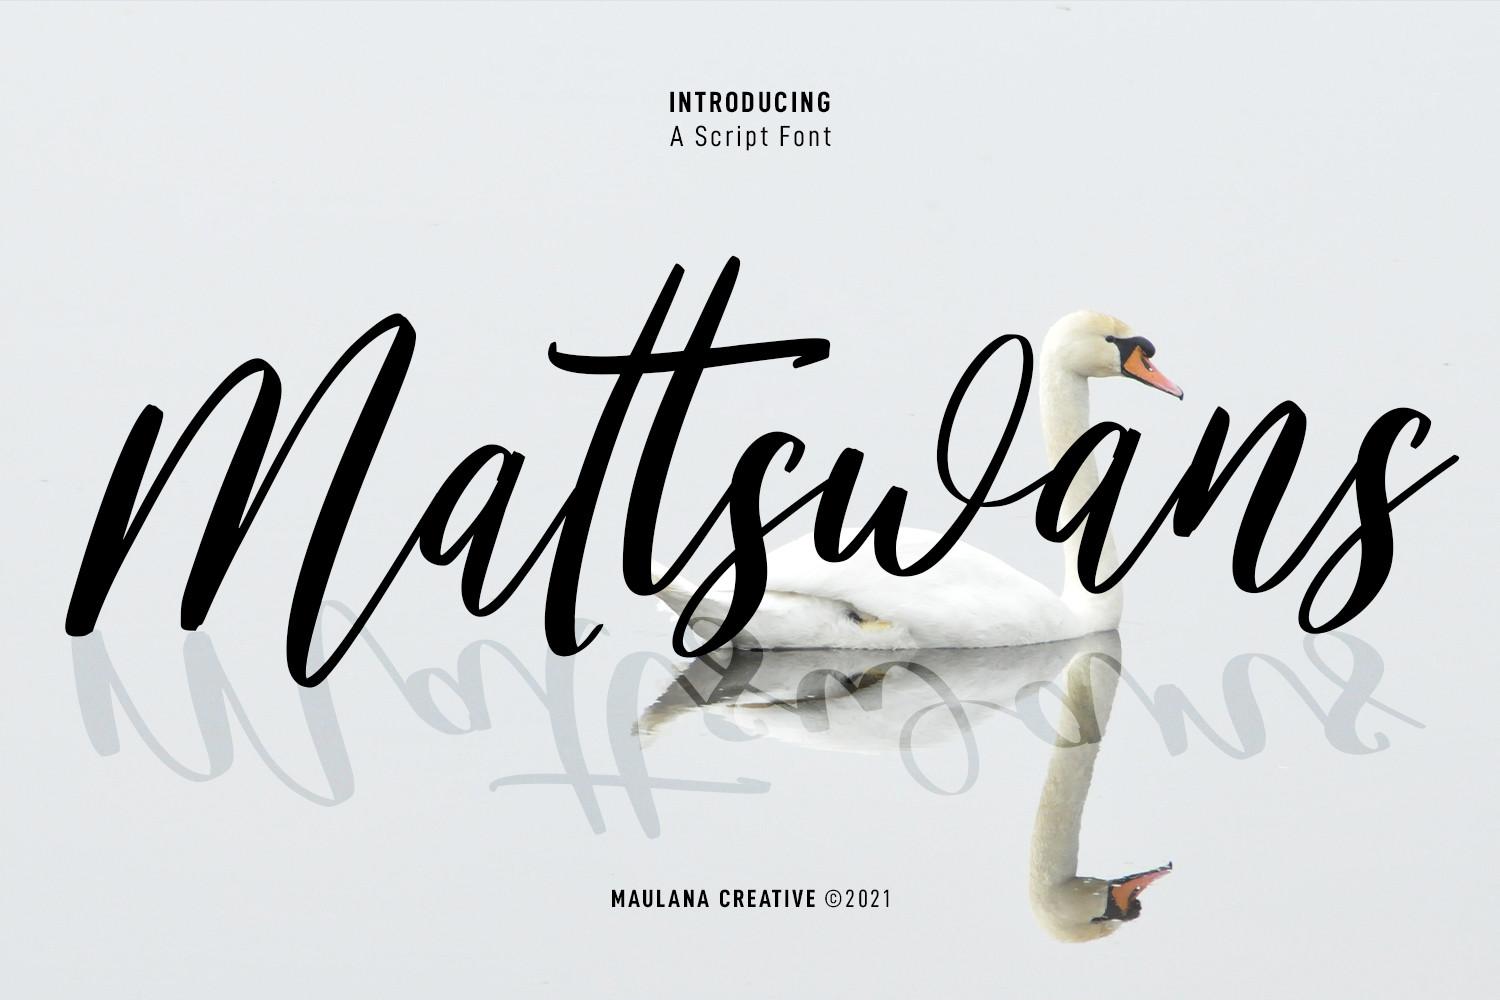 Mattswans Script Font